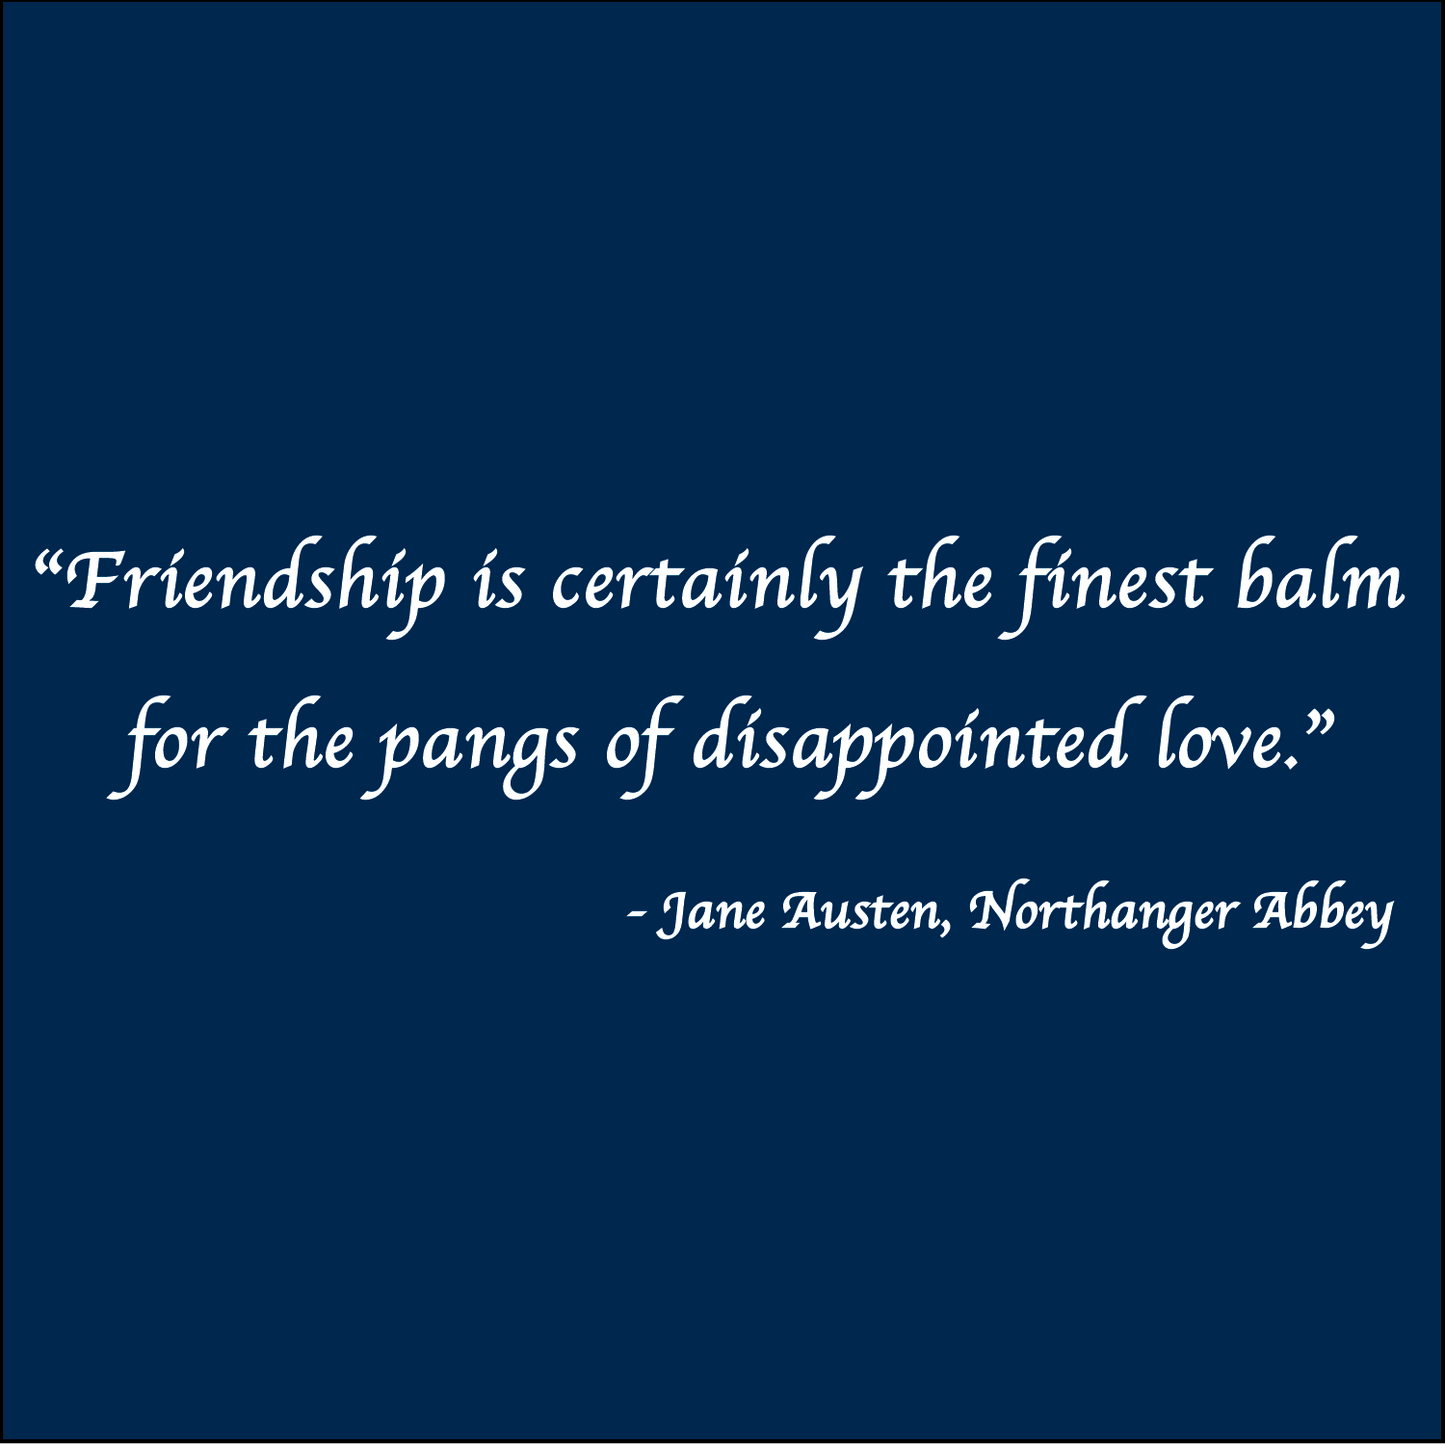 Friendship is the finest balm - Jane Austen, Northanger Abbey